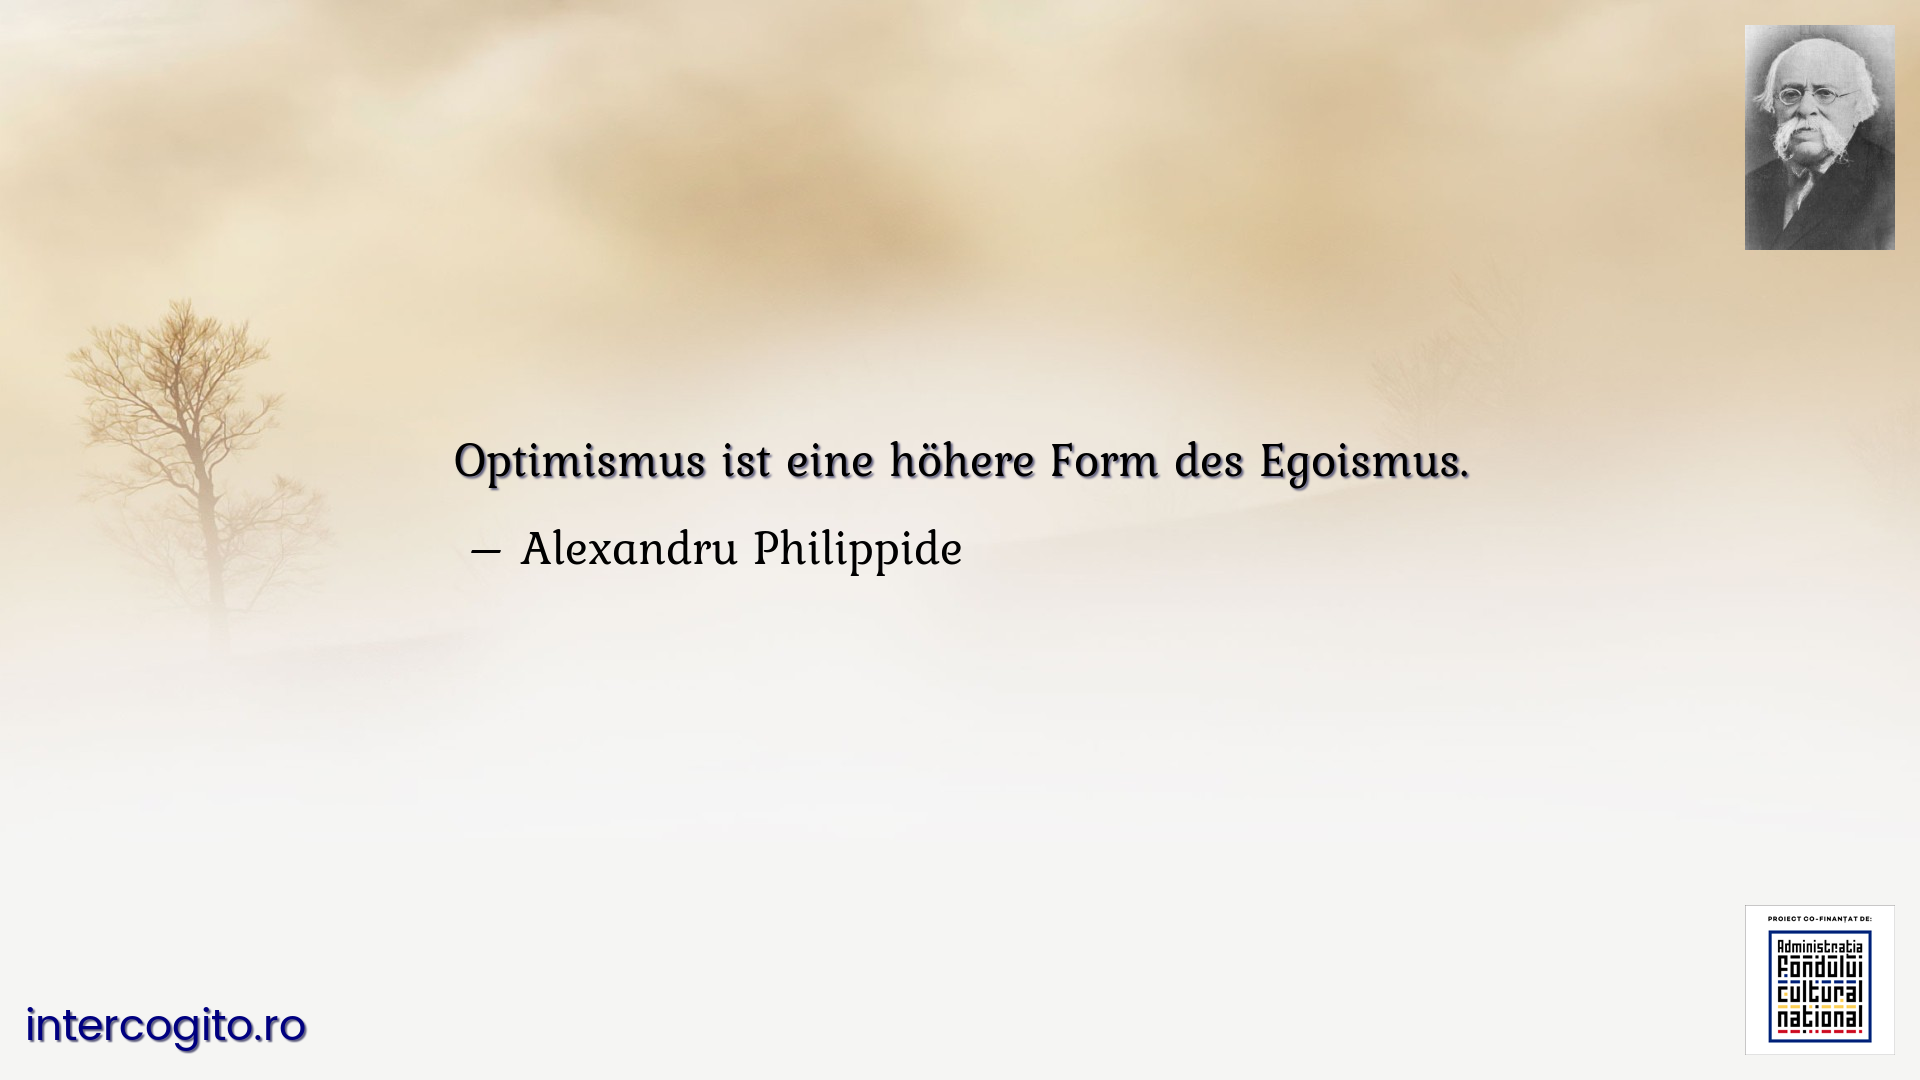 Optimismus ist eine höhere Form des Egoismus.